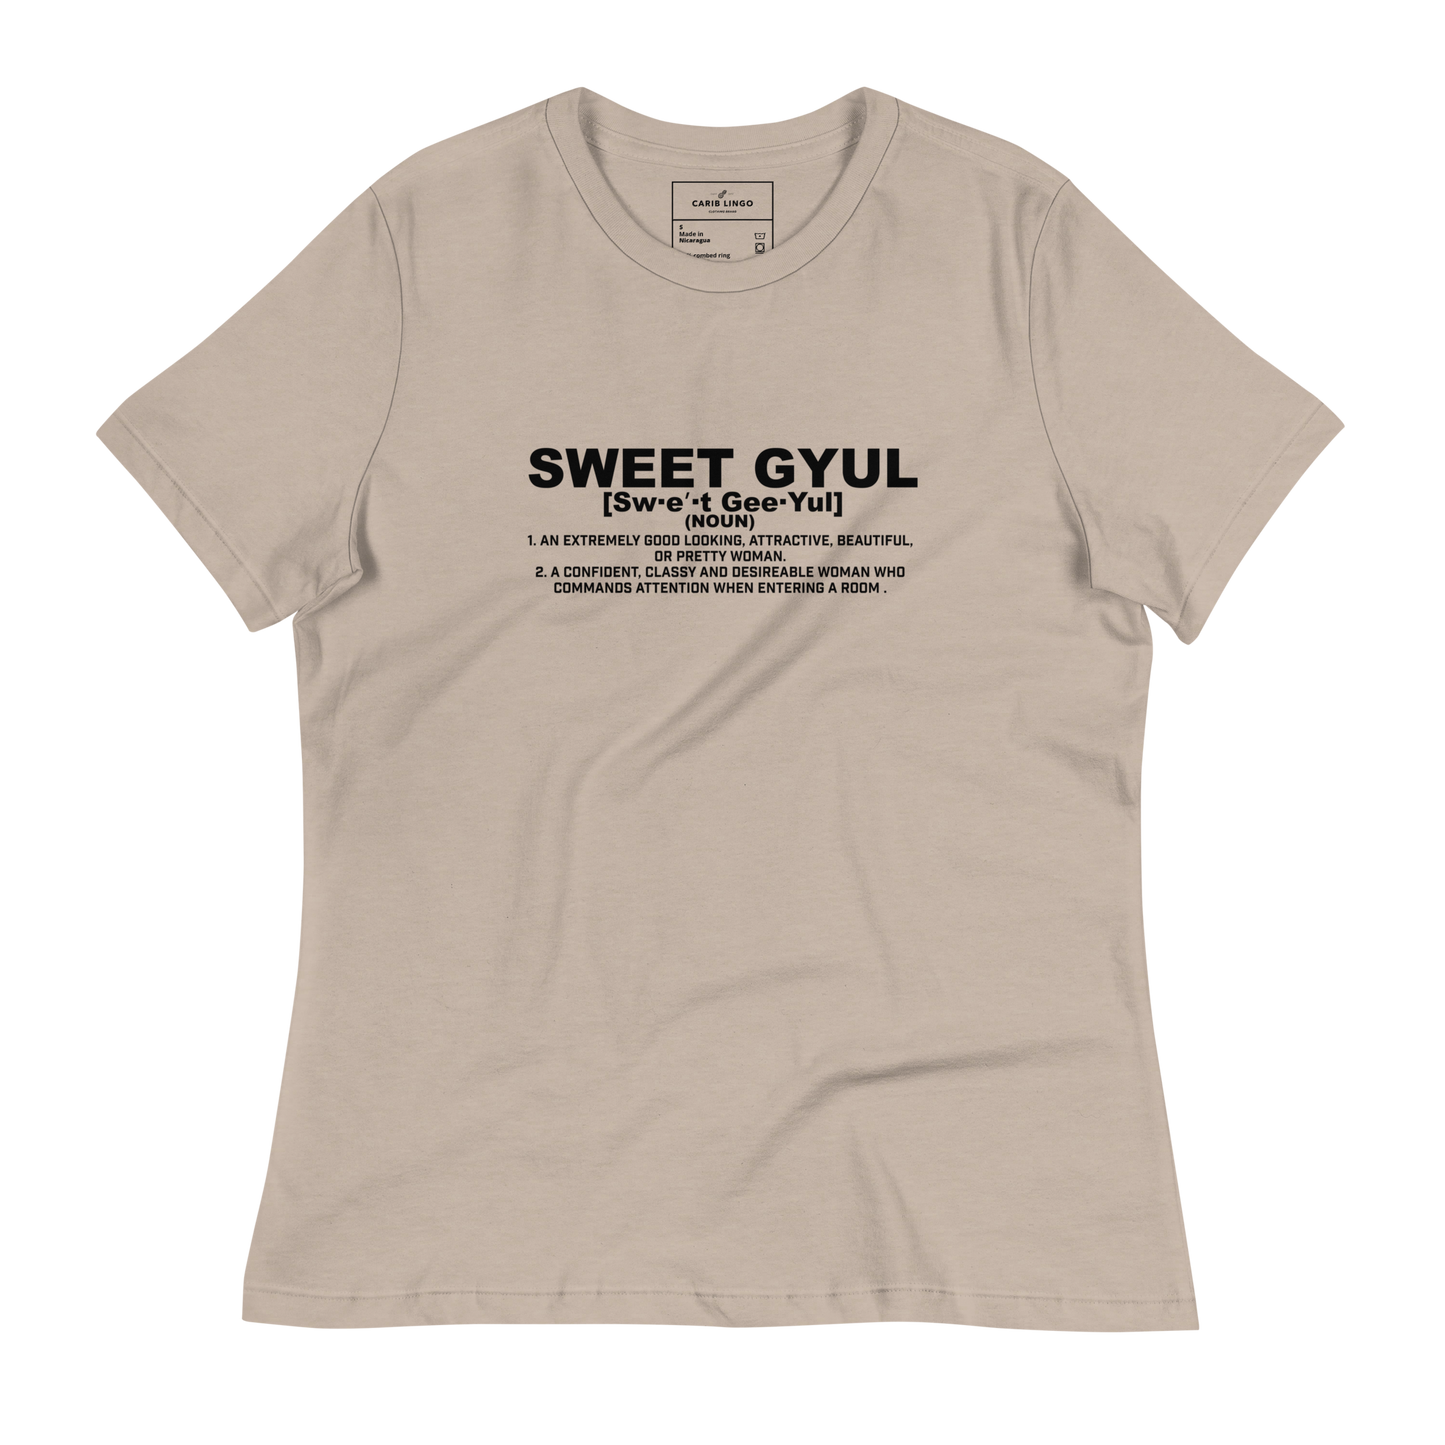 Sweet Gyul Women's T-Shirt